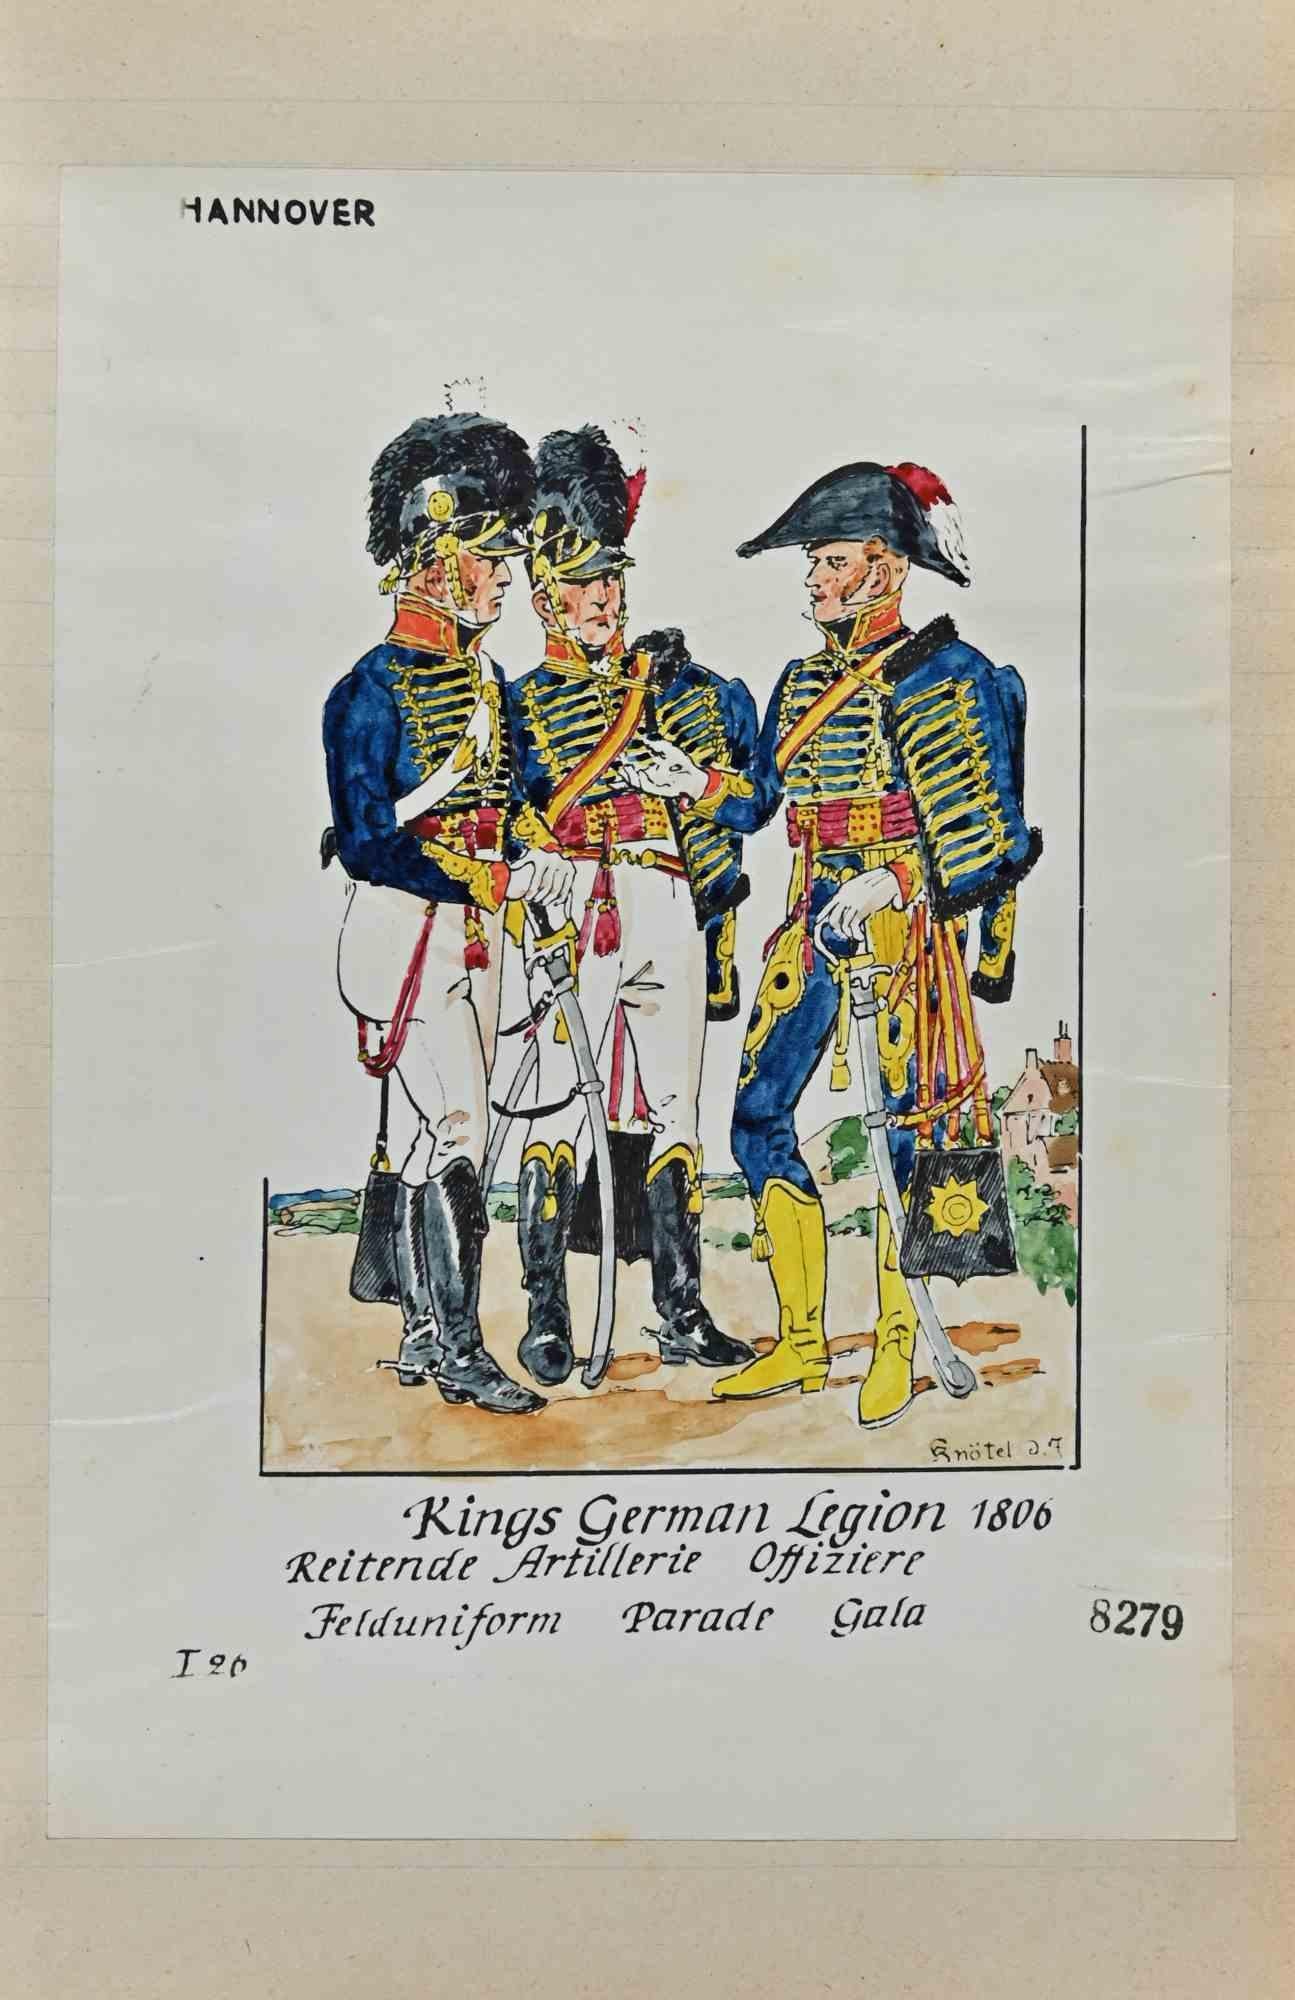 Le drapeau de la Légion allemande 1806 - dessin original d'Herbert Knotel - années 1940